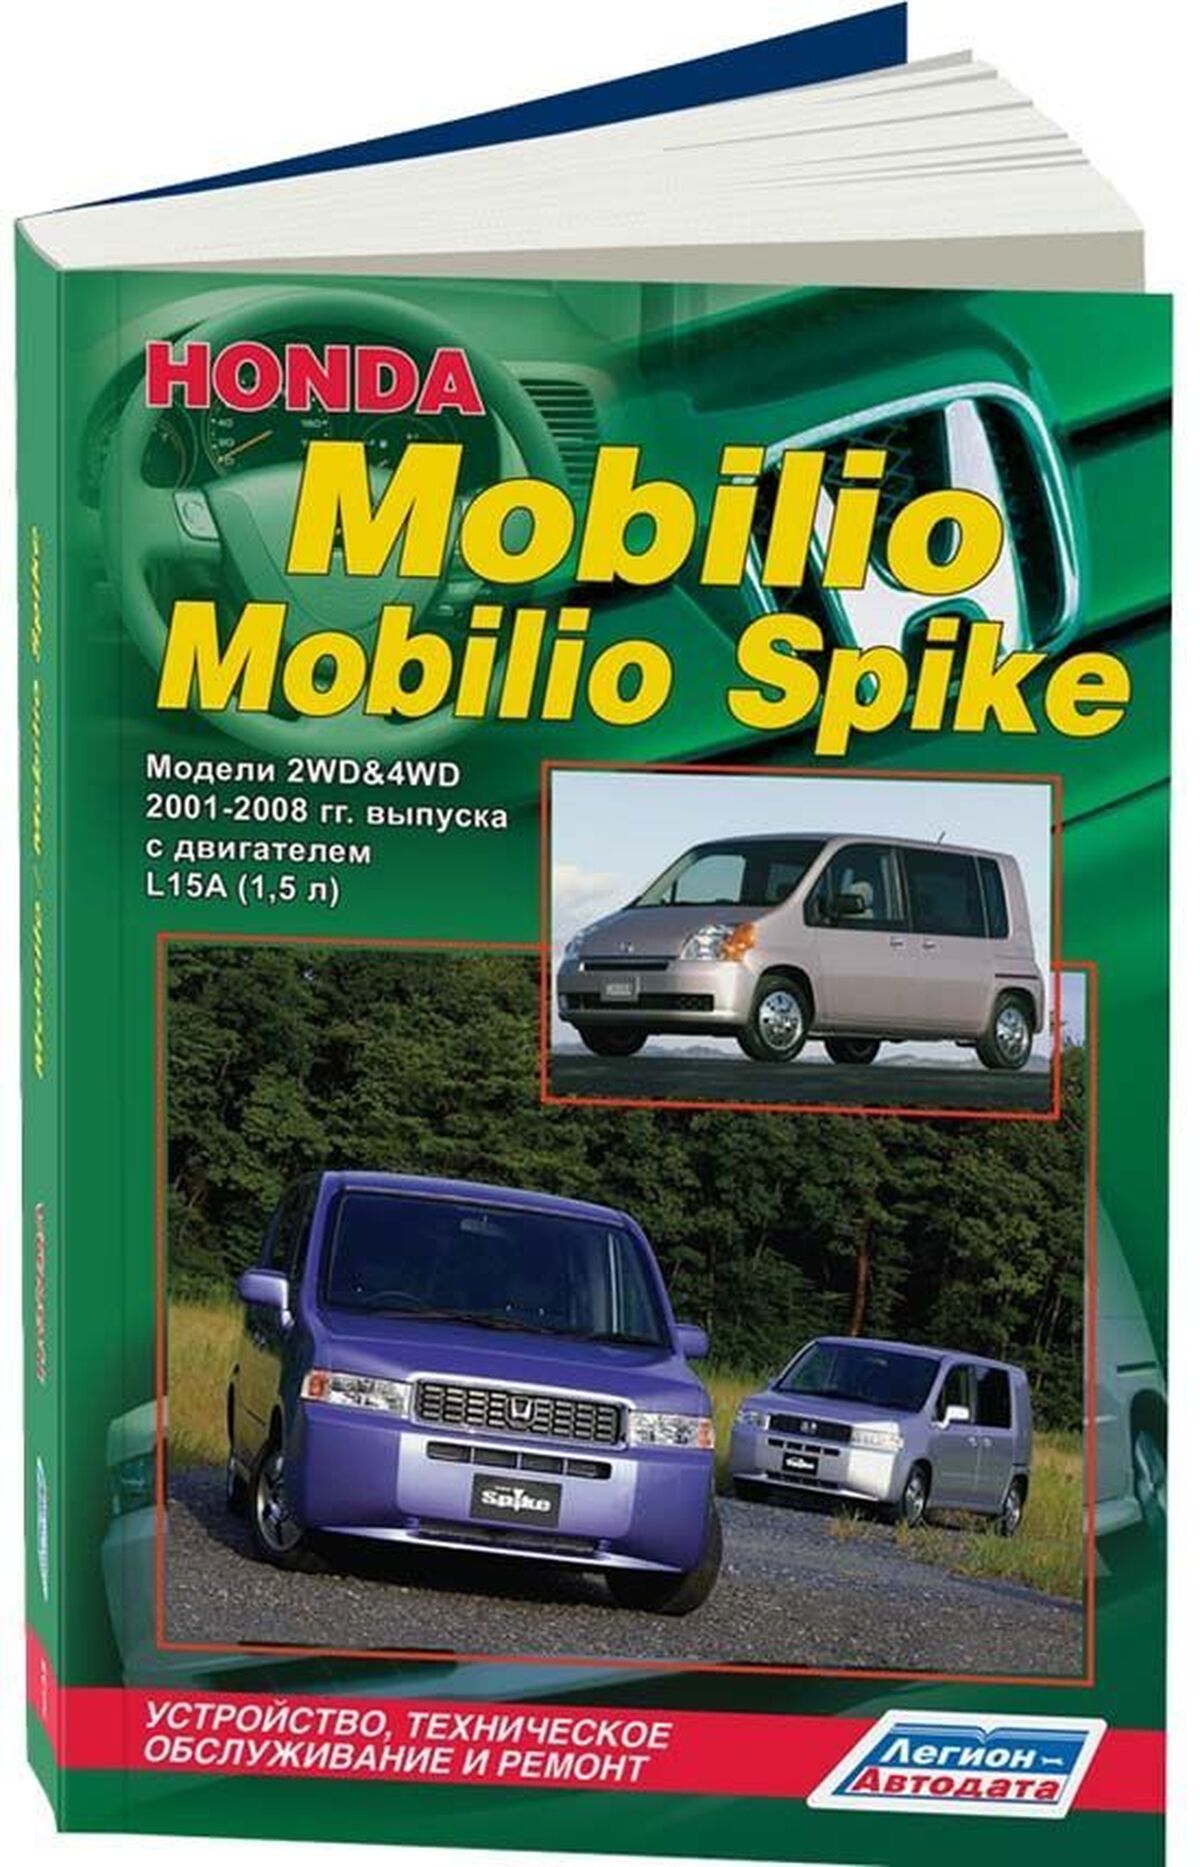 Книга: HONDA MOBILIO / MOBILIO SPIKE (б) 2001-2008 г.в., рем., экспл., то | Легион-Aвтодата